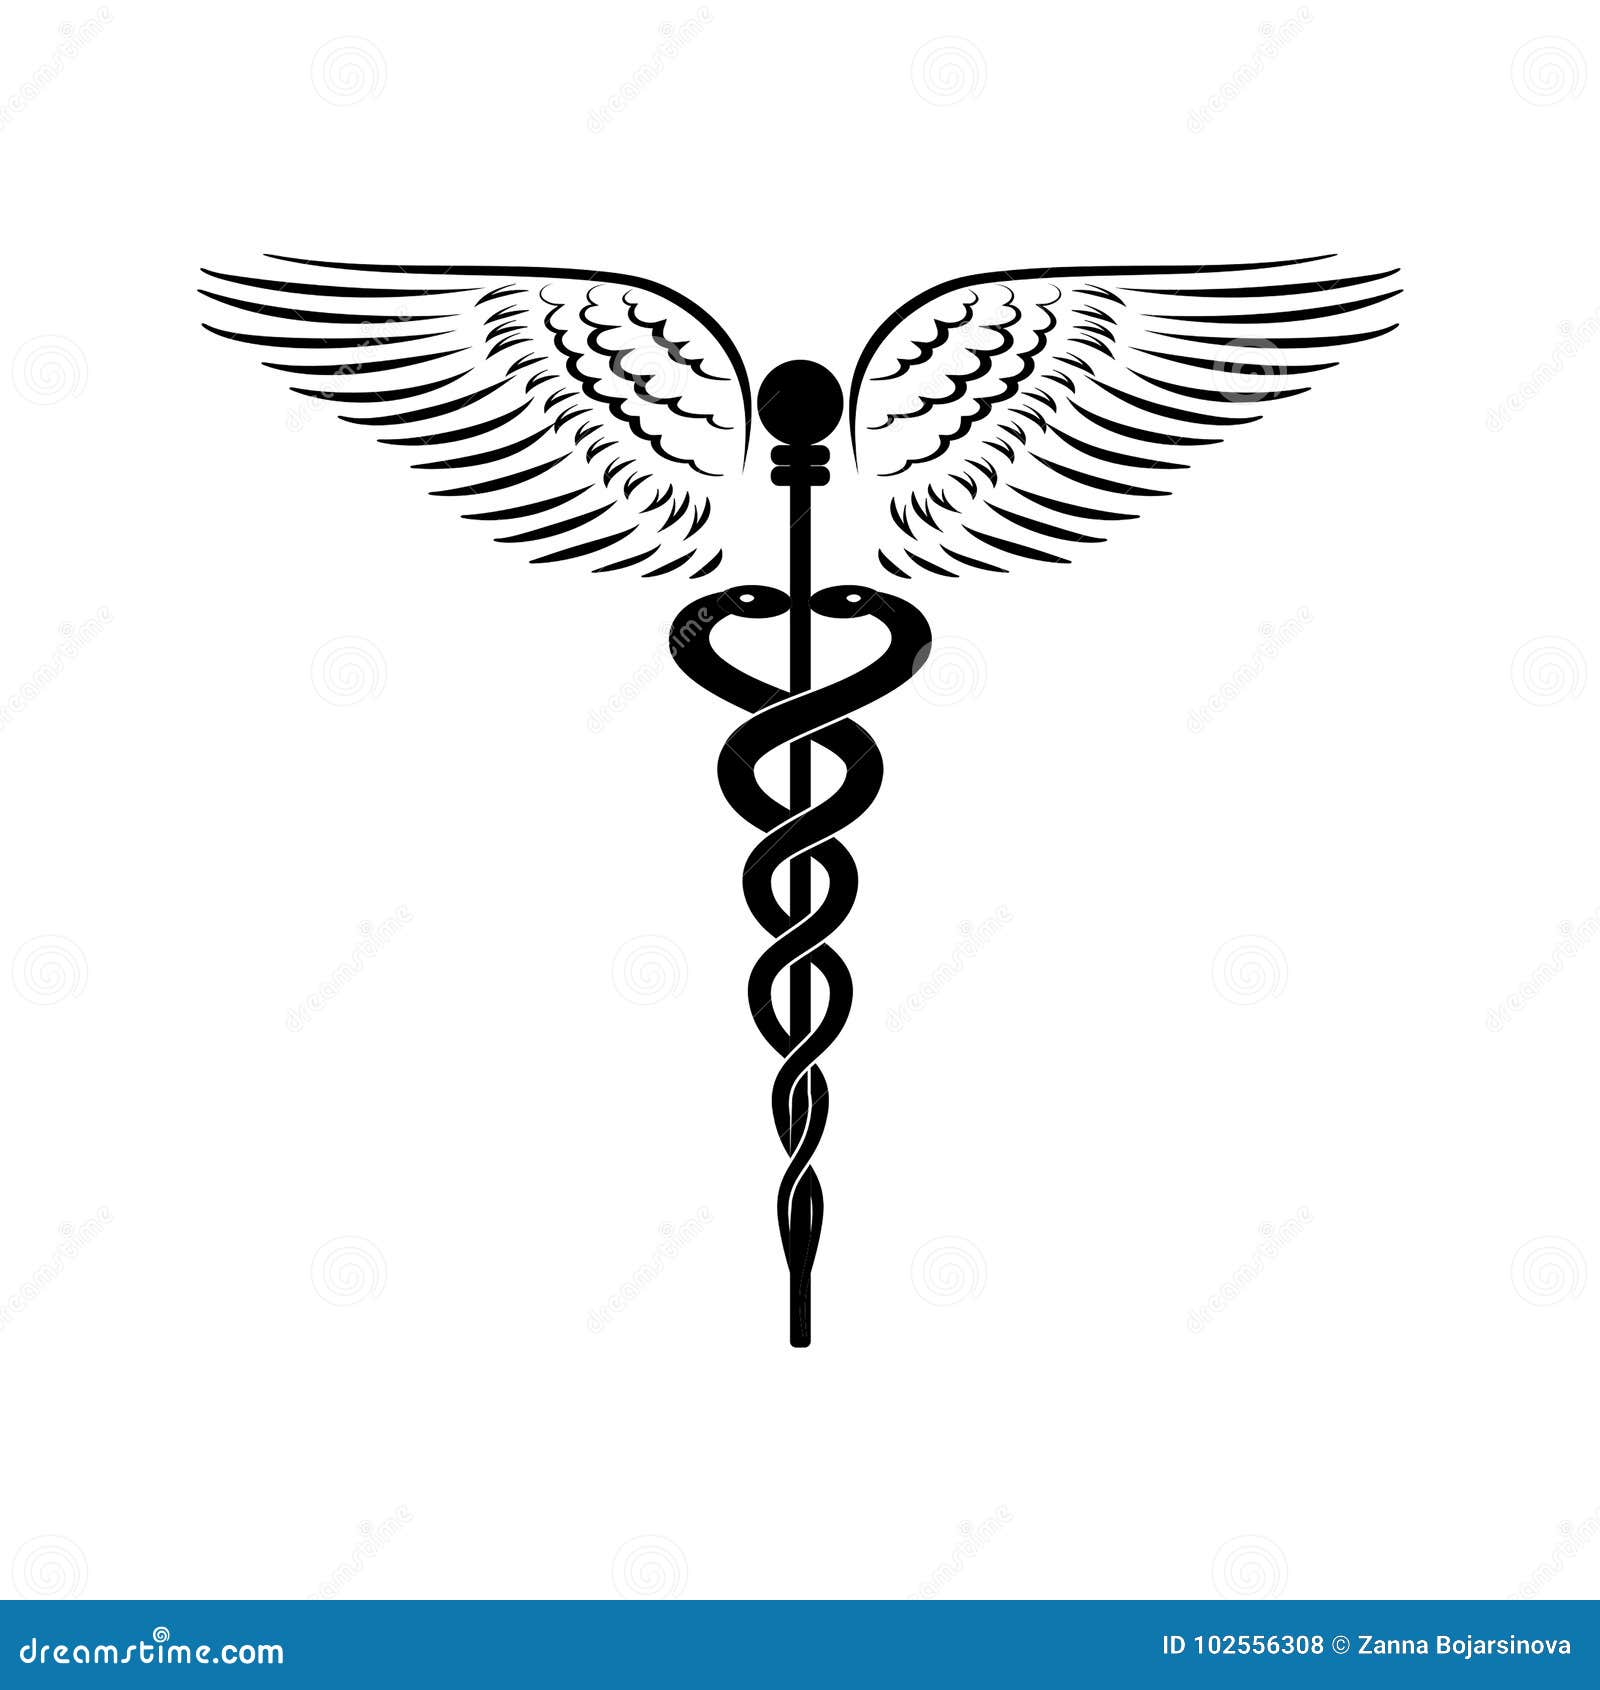 Кадуцей - иллюстрация вектора символа медицины изолированная на белой предпосылке